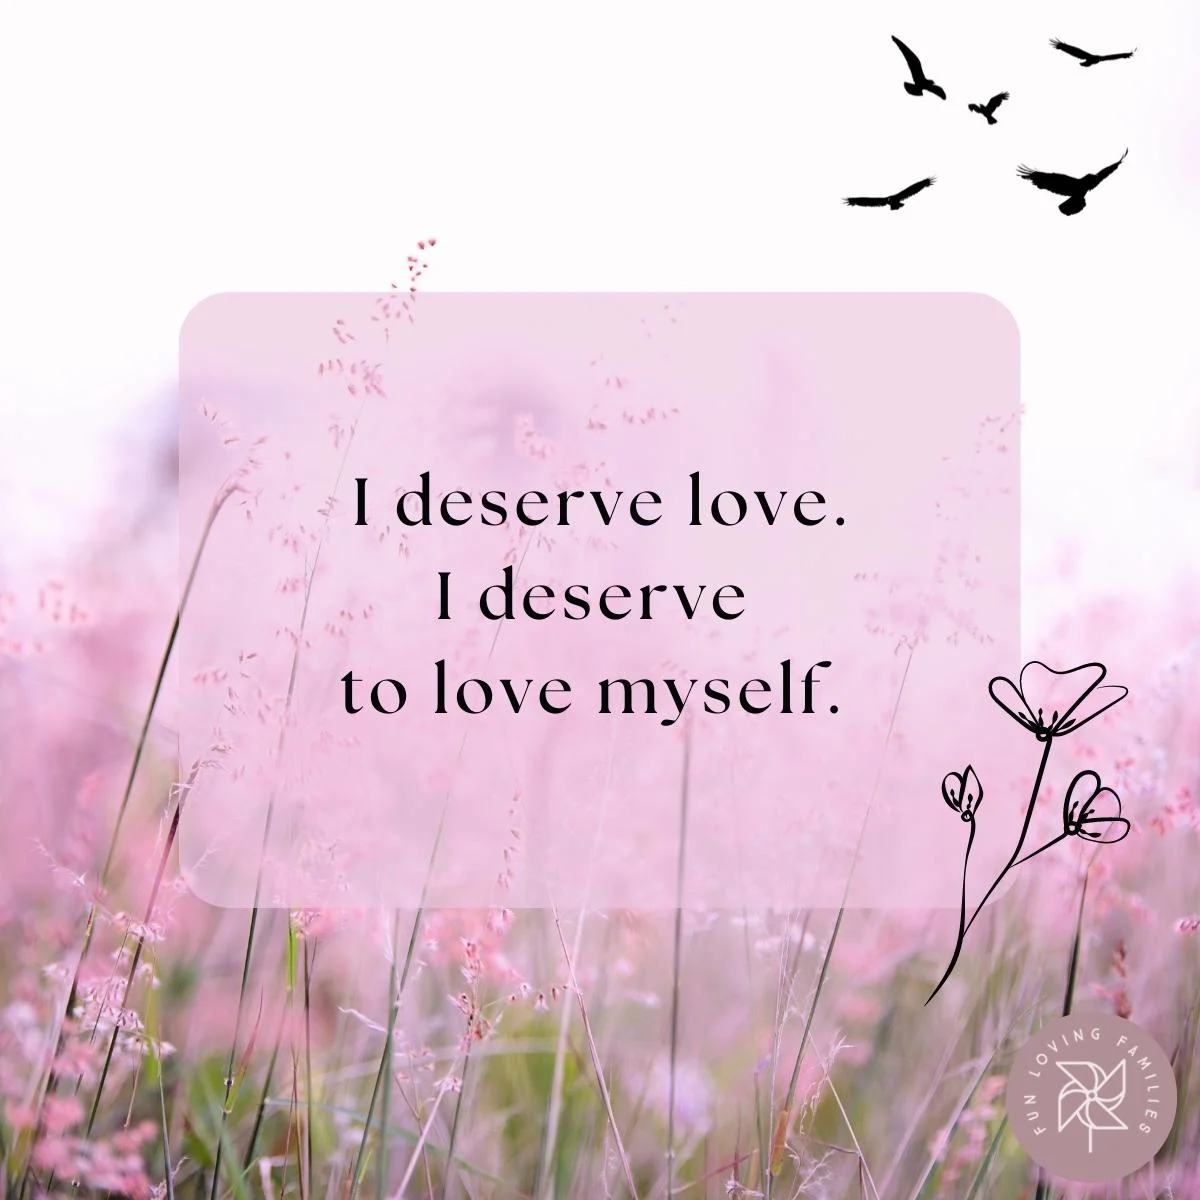 I deserve love. I deserve to love myself affirmation